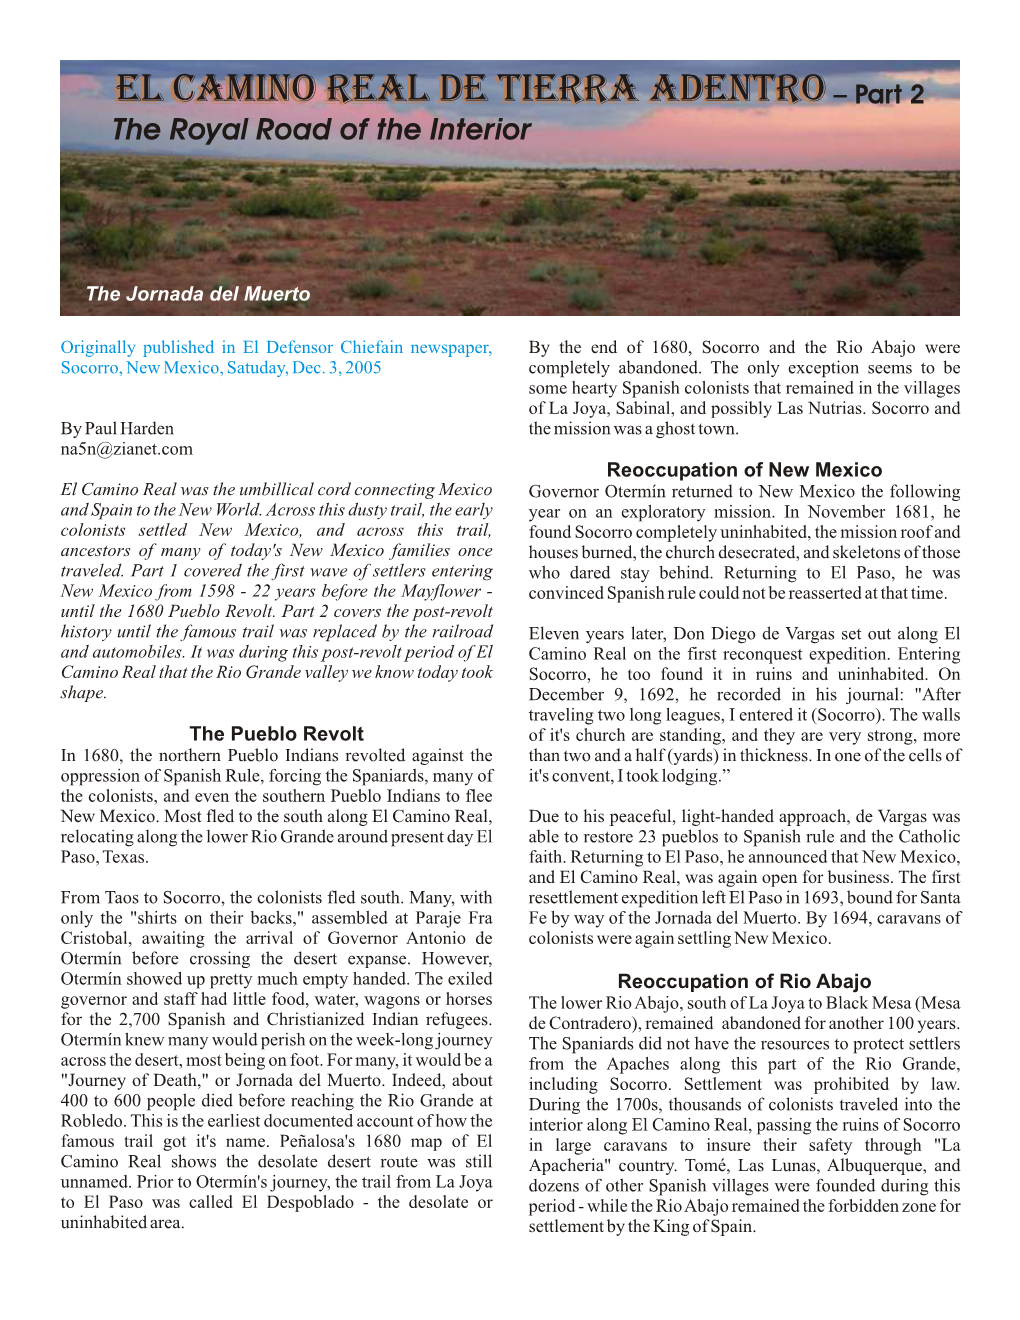 El Camino Real De Tierra Adentro – Part II Page 2